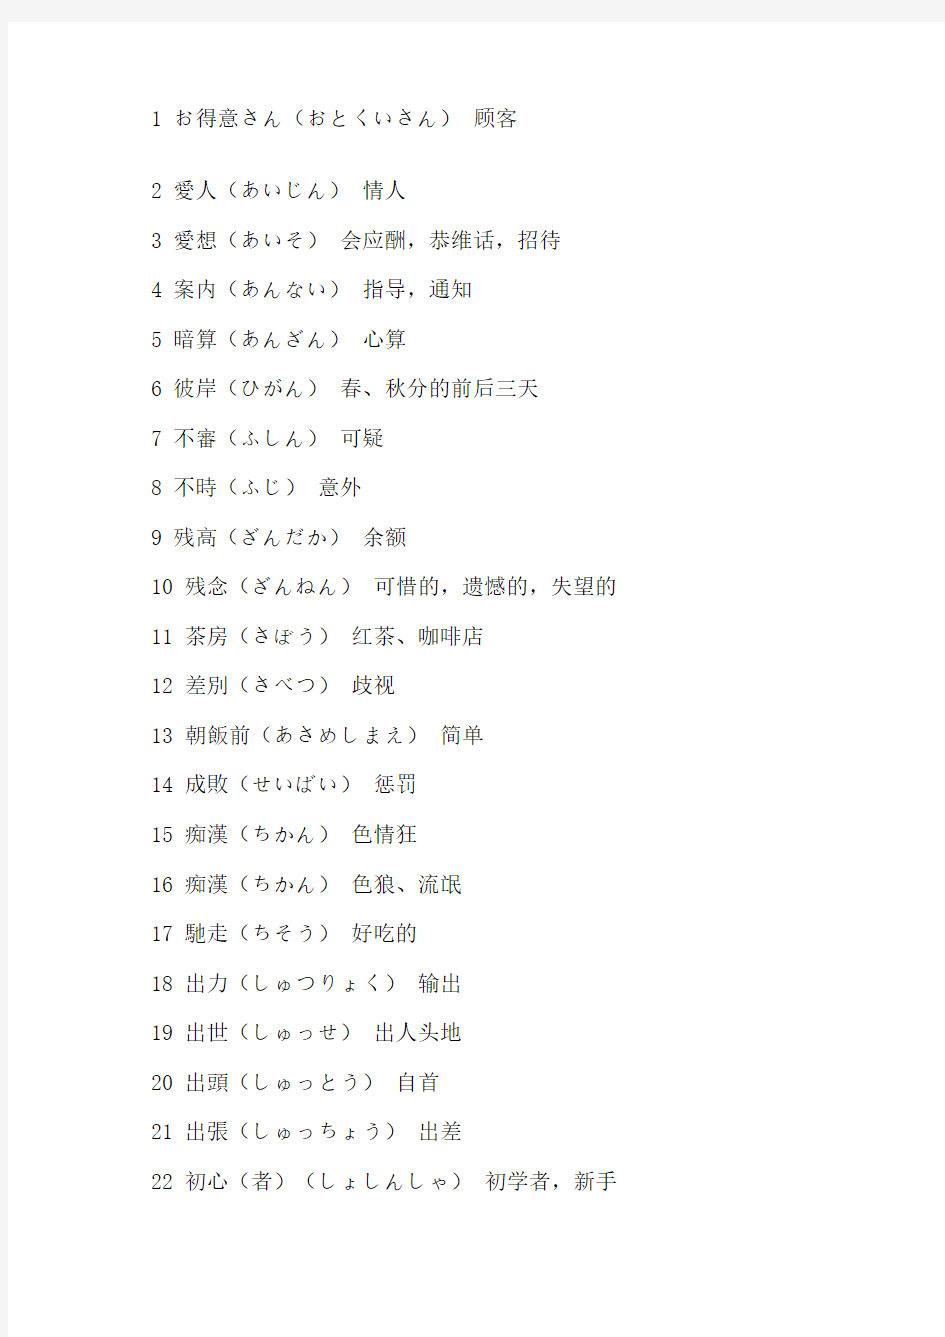 200个日语单词和日语汉字不同意思